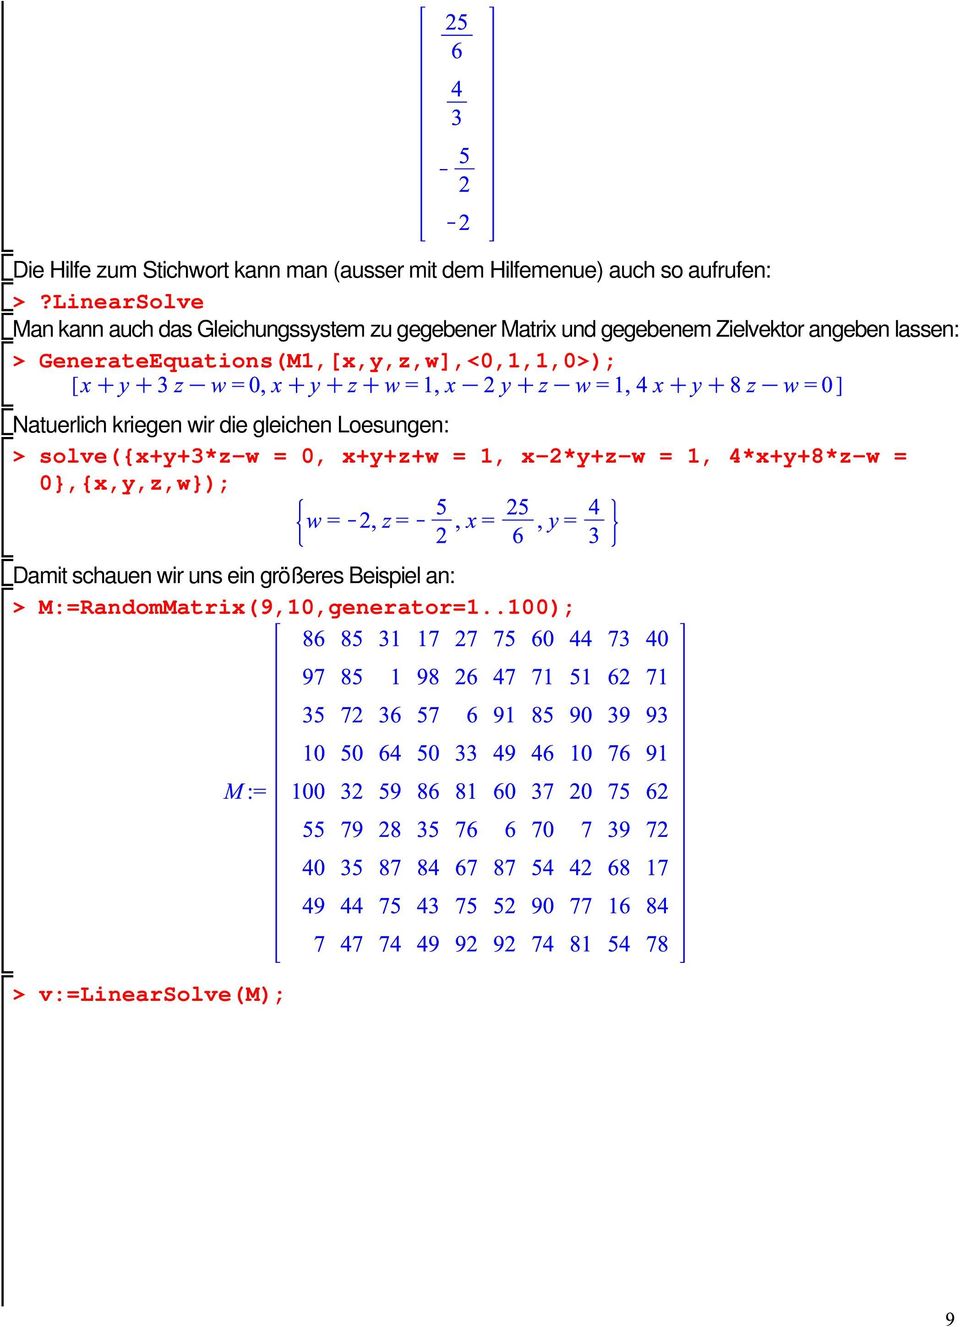 GenerateEquations(M1,[x,y,z,w],<0,1,1,0); Natuerlich kriegen wir die gleichen Loesungen: solve({x+y+3*z-w = 0,